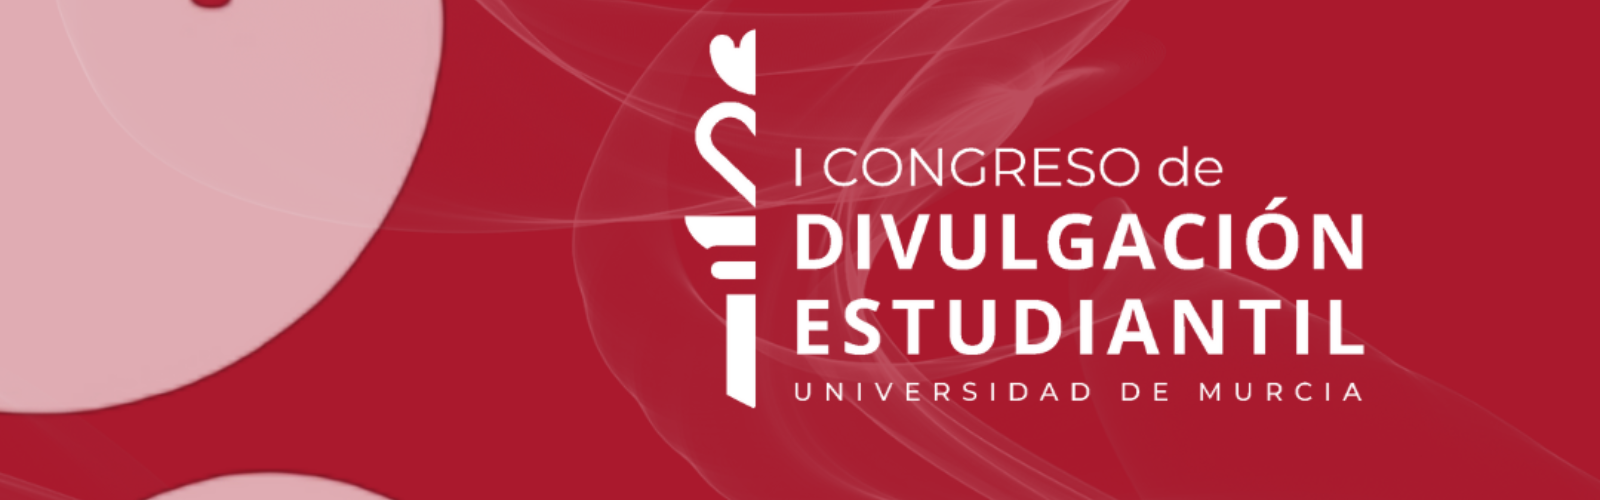 El CEUM organiza el I Congreso de Divulgación Estudiantil de la UMU